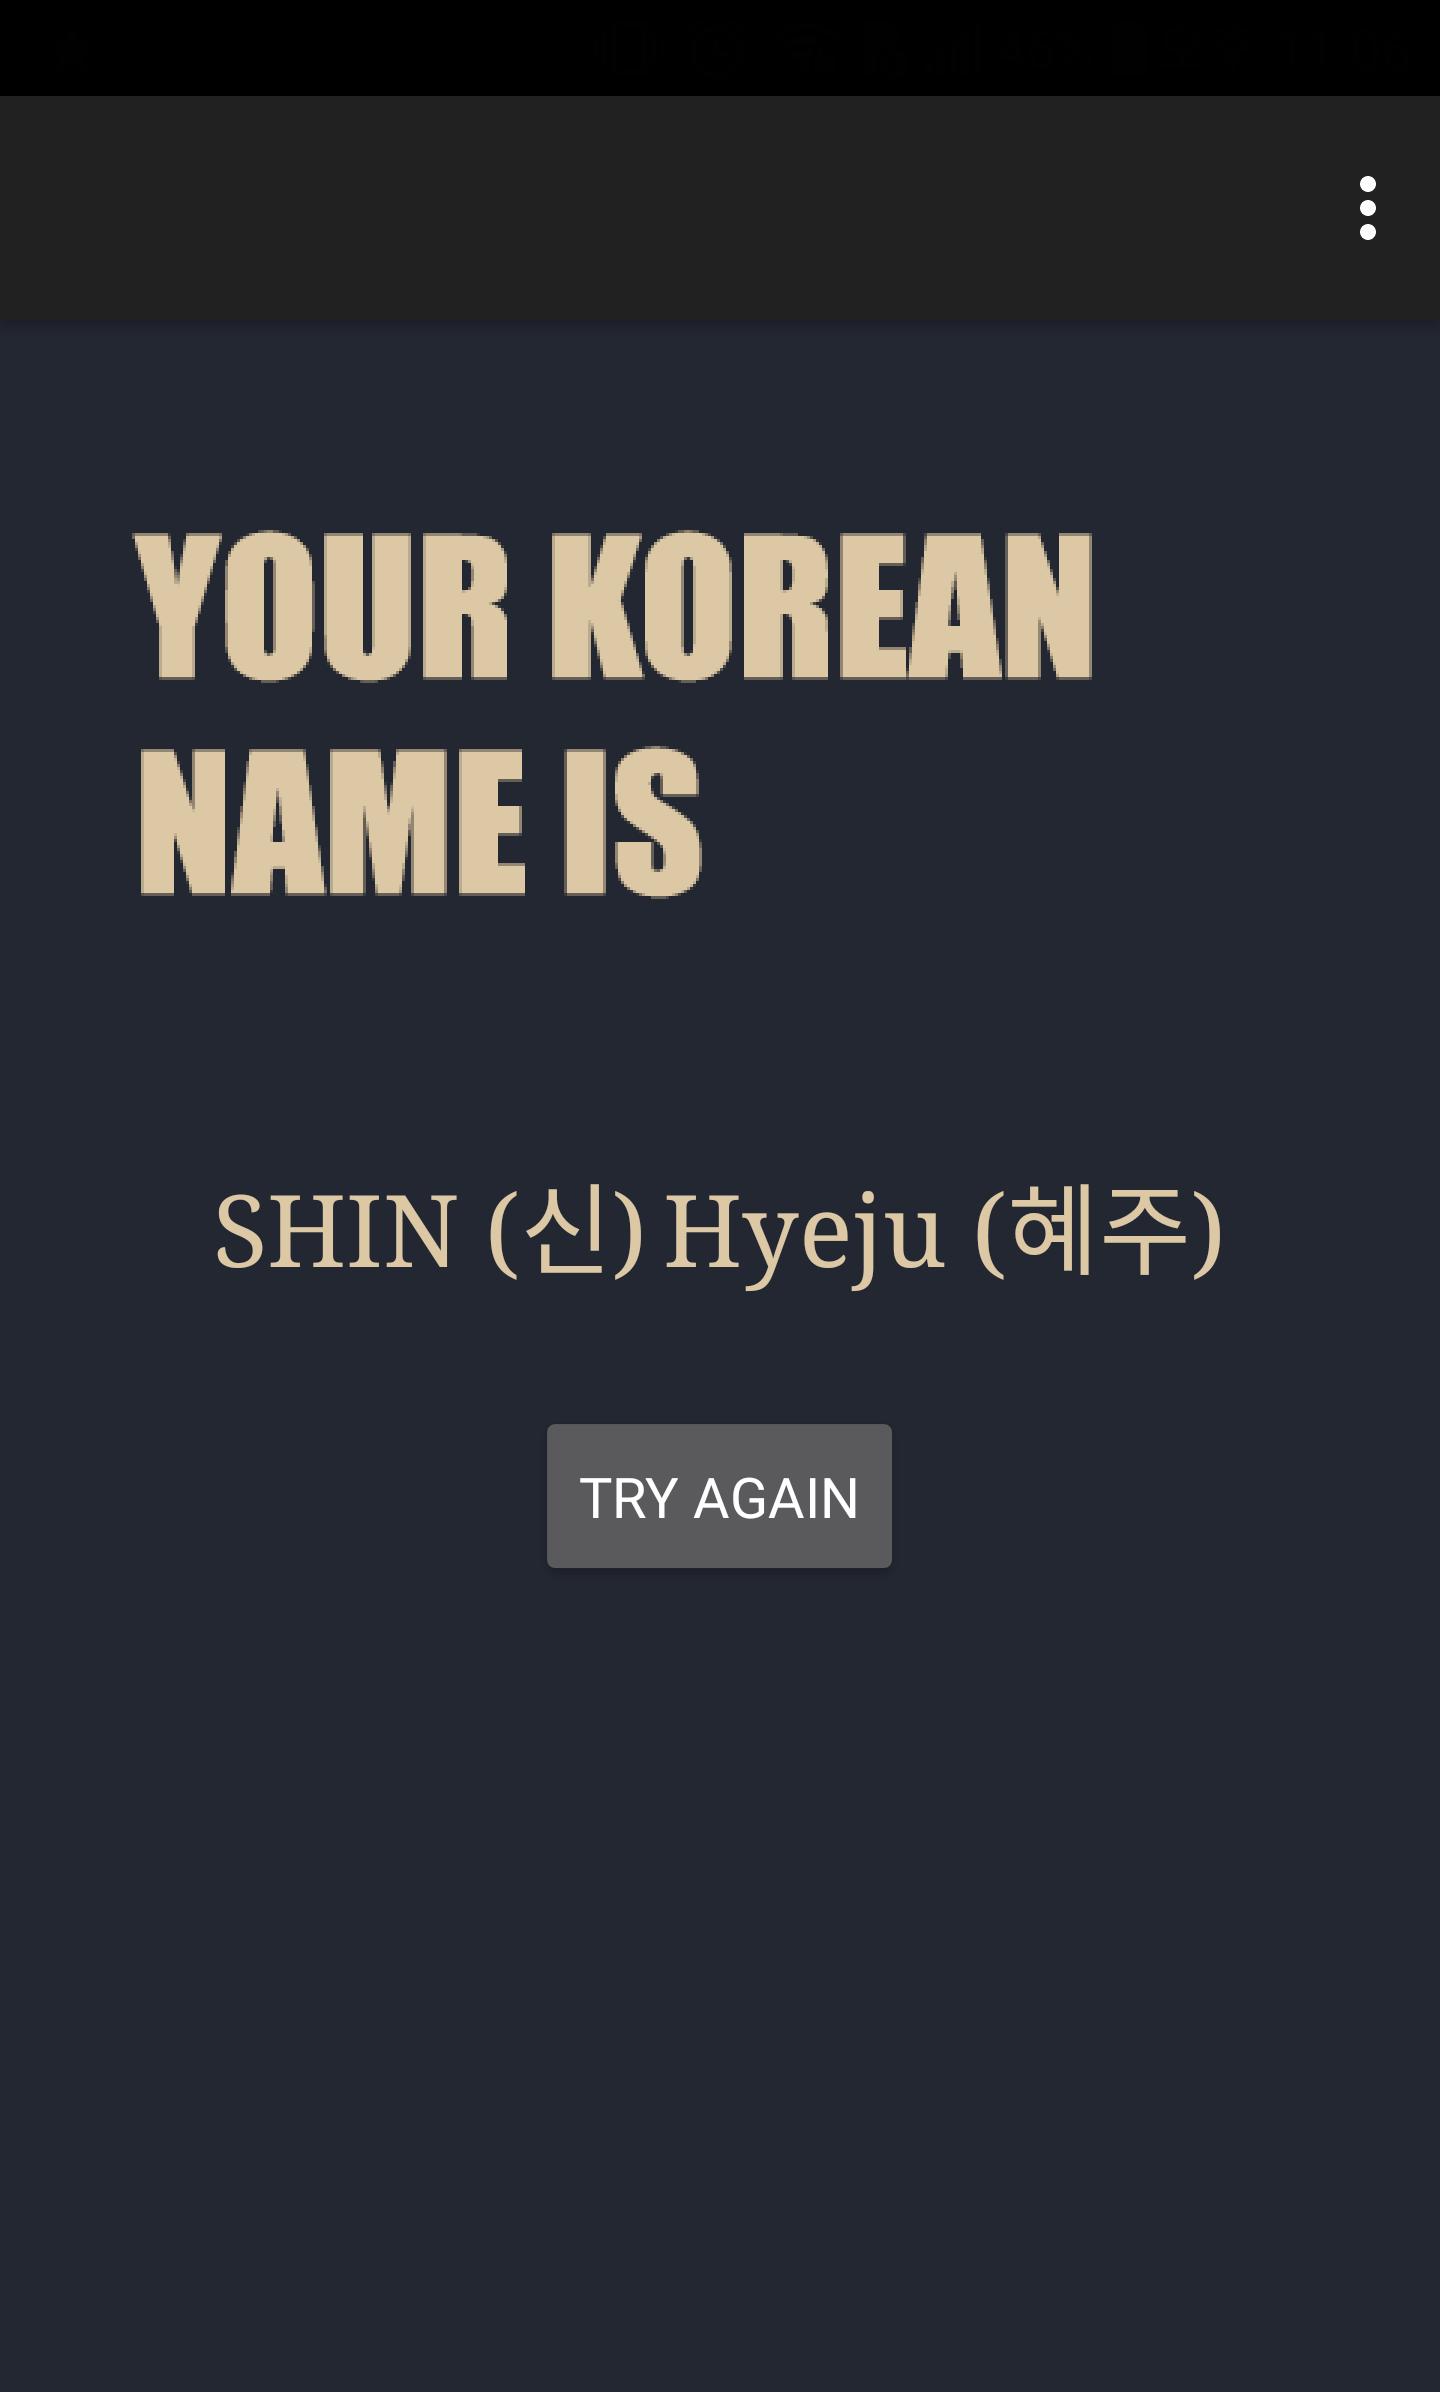 Korean Name Generator For Android Apk Download - roblox studio name generator